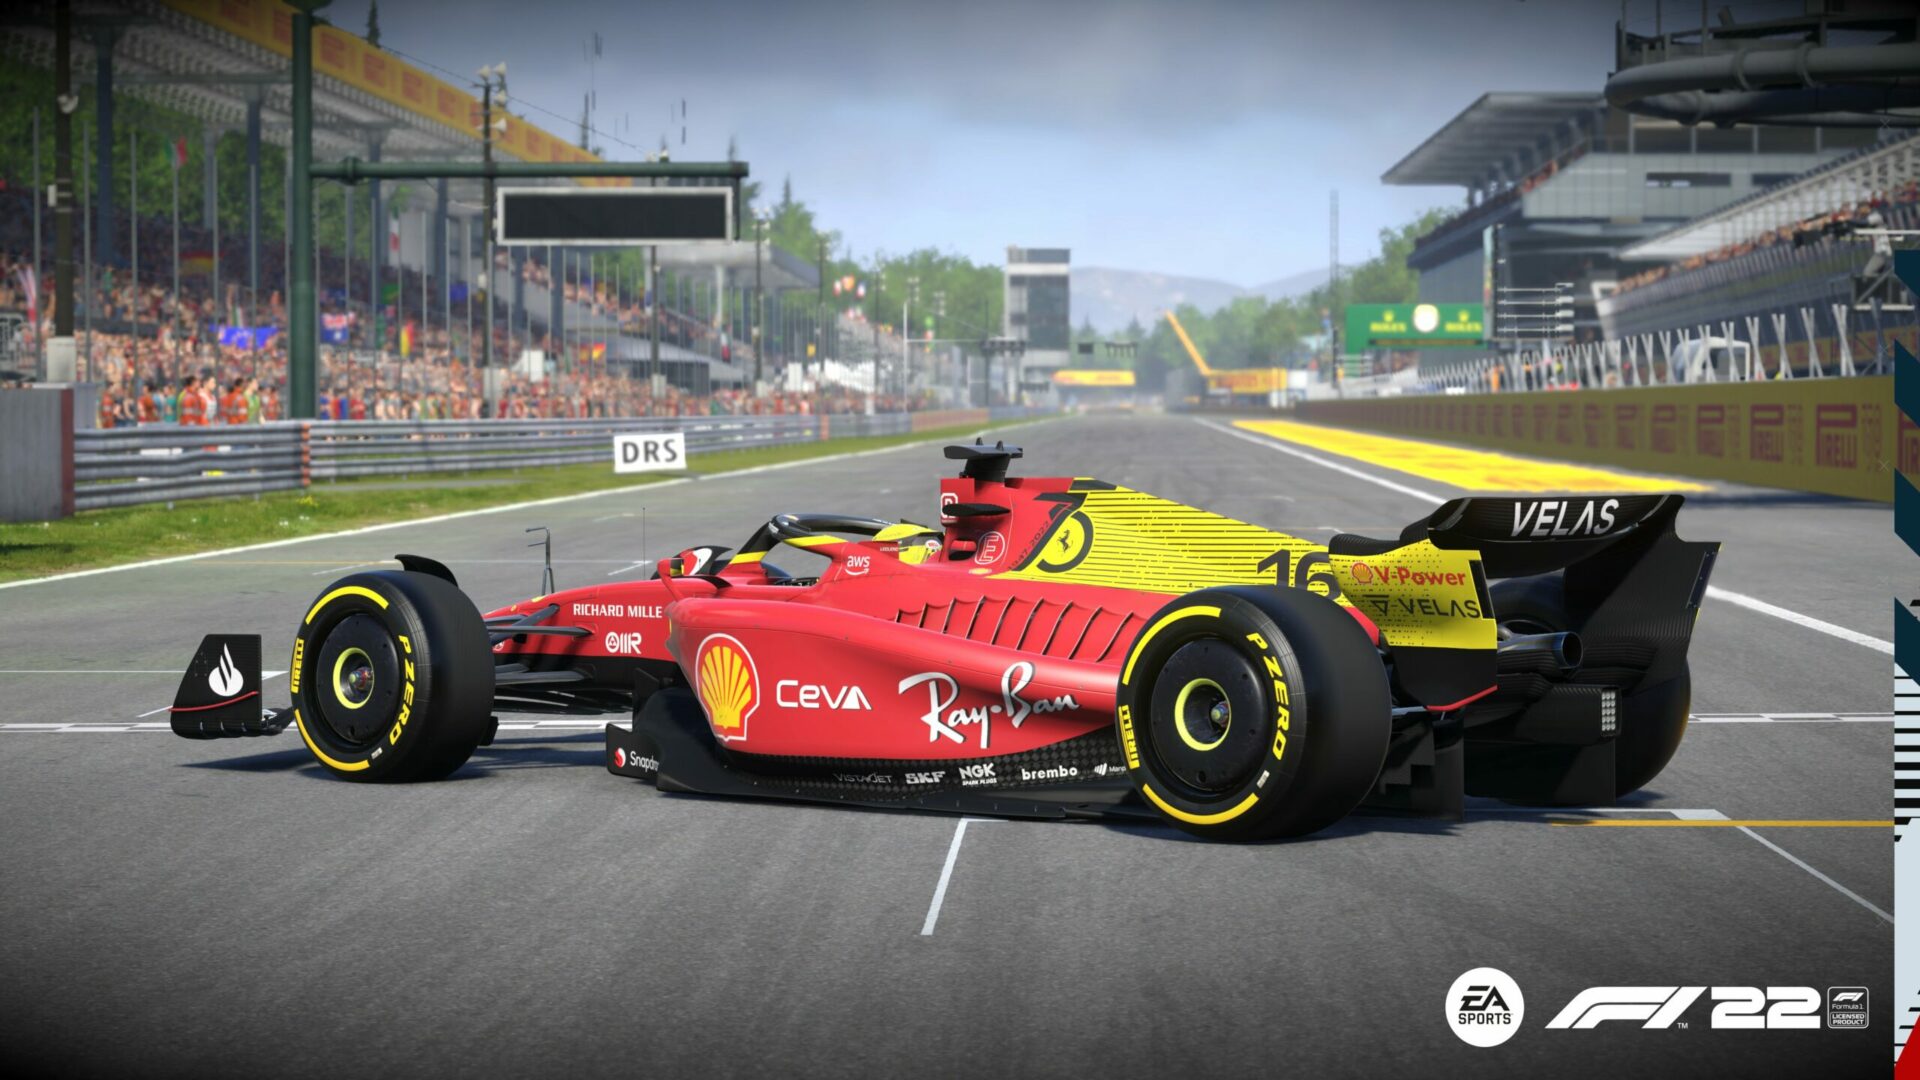 F1 - La livrée spéciale GP d'Italie de Ferrari bientôt disponible dans le jeu F1 22